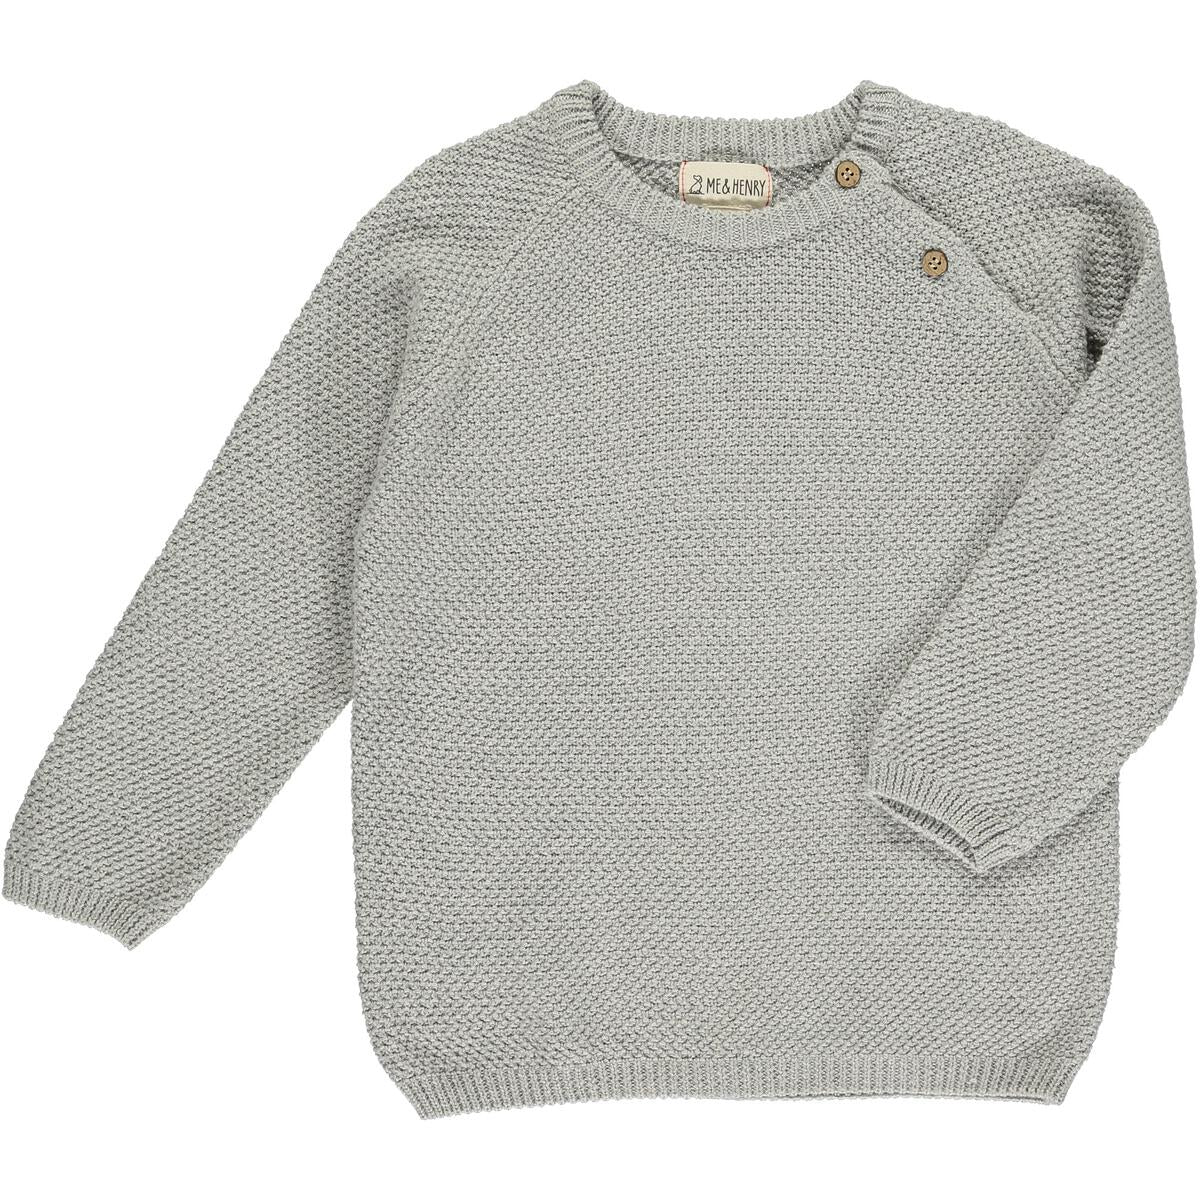 Boy's Roan Sweater in Light Gray